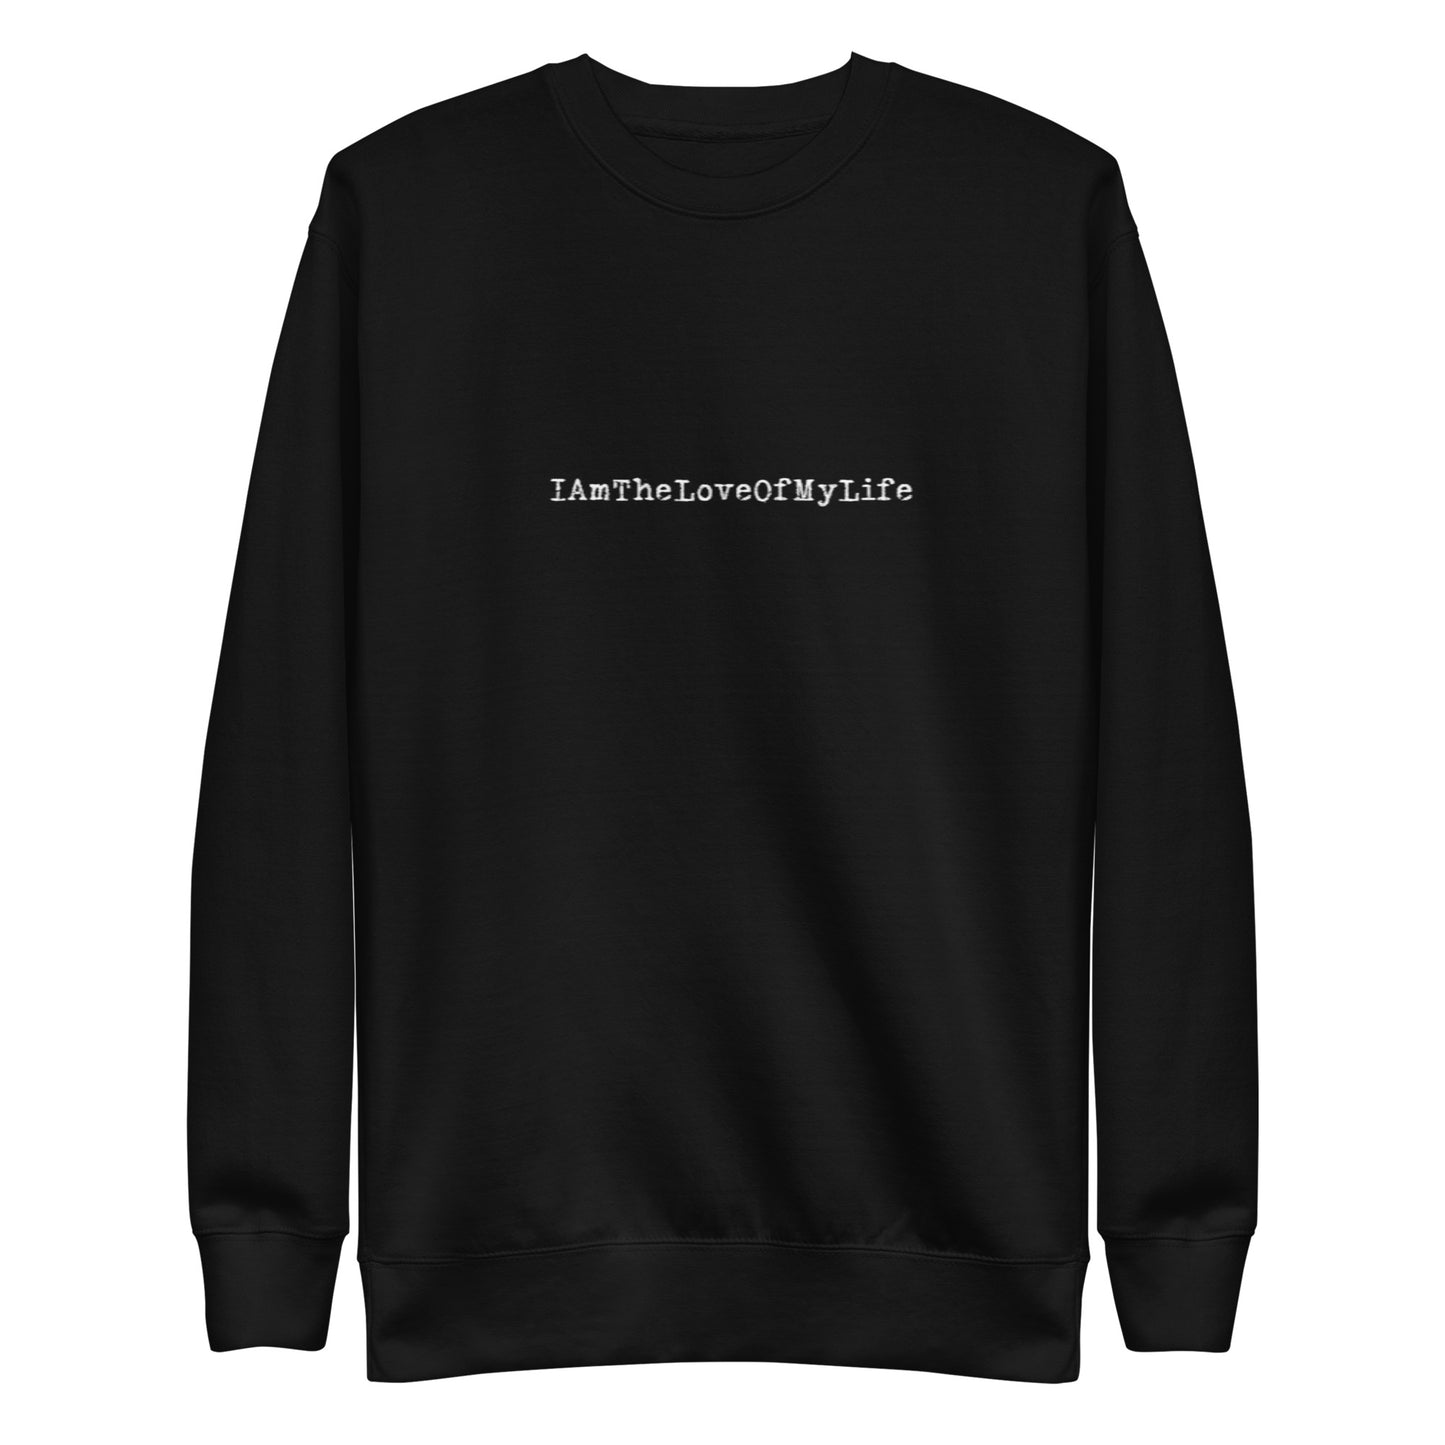 IAmTheLoveOfMyLife Unisex Premium Sweatshirt